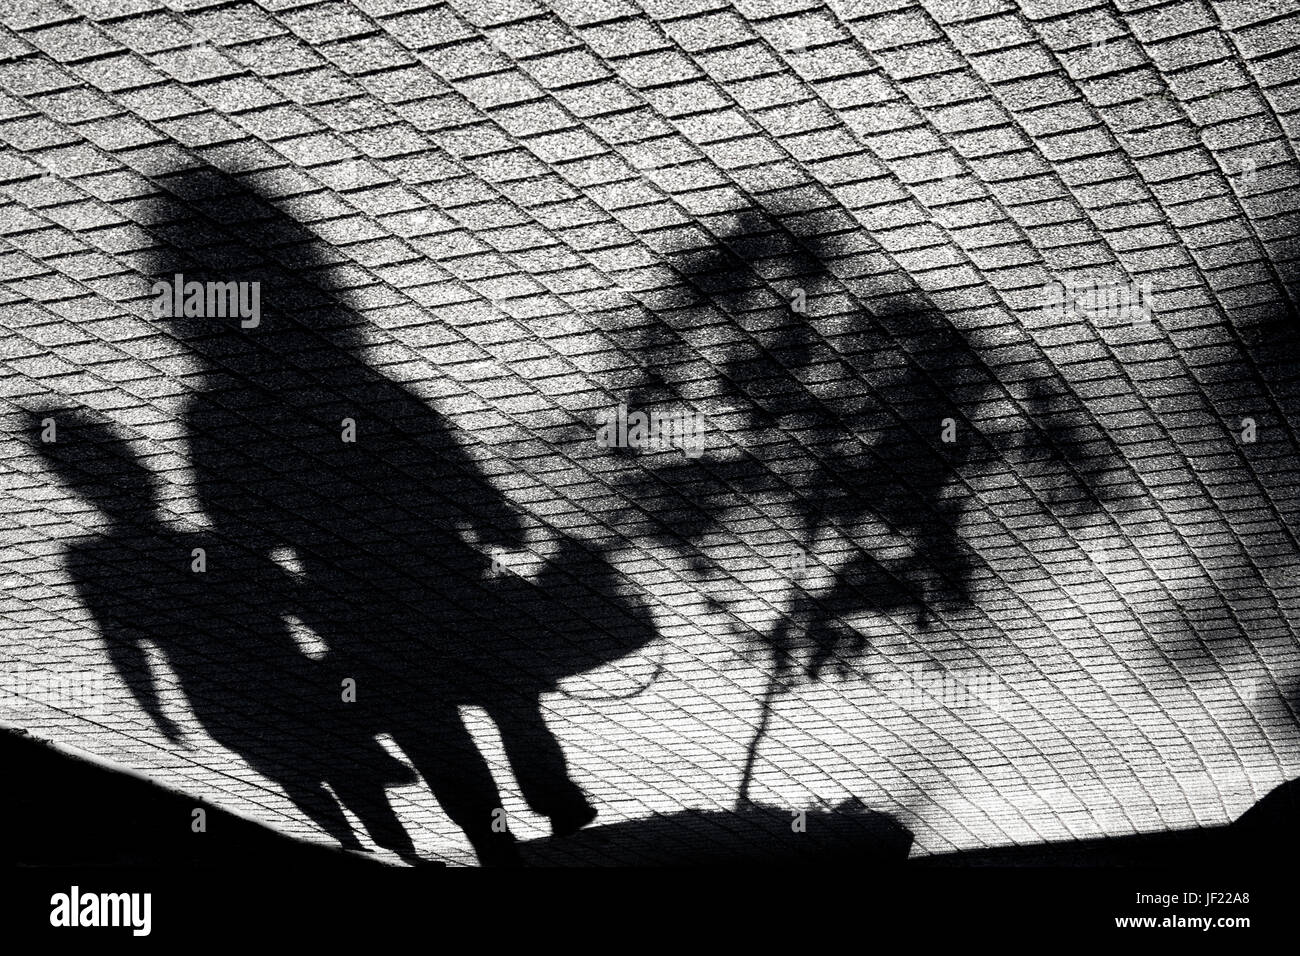 Schatten einer Frau, ein Kind und ein kleiner Baum auf einem Stadt-Pflaster Stockfoto